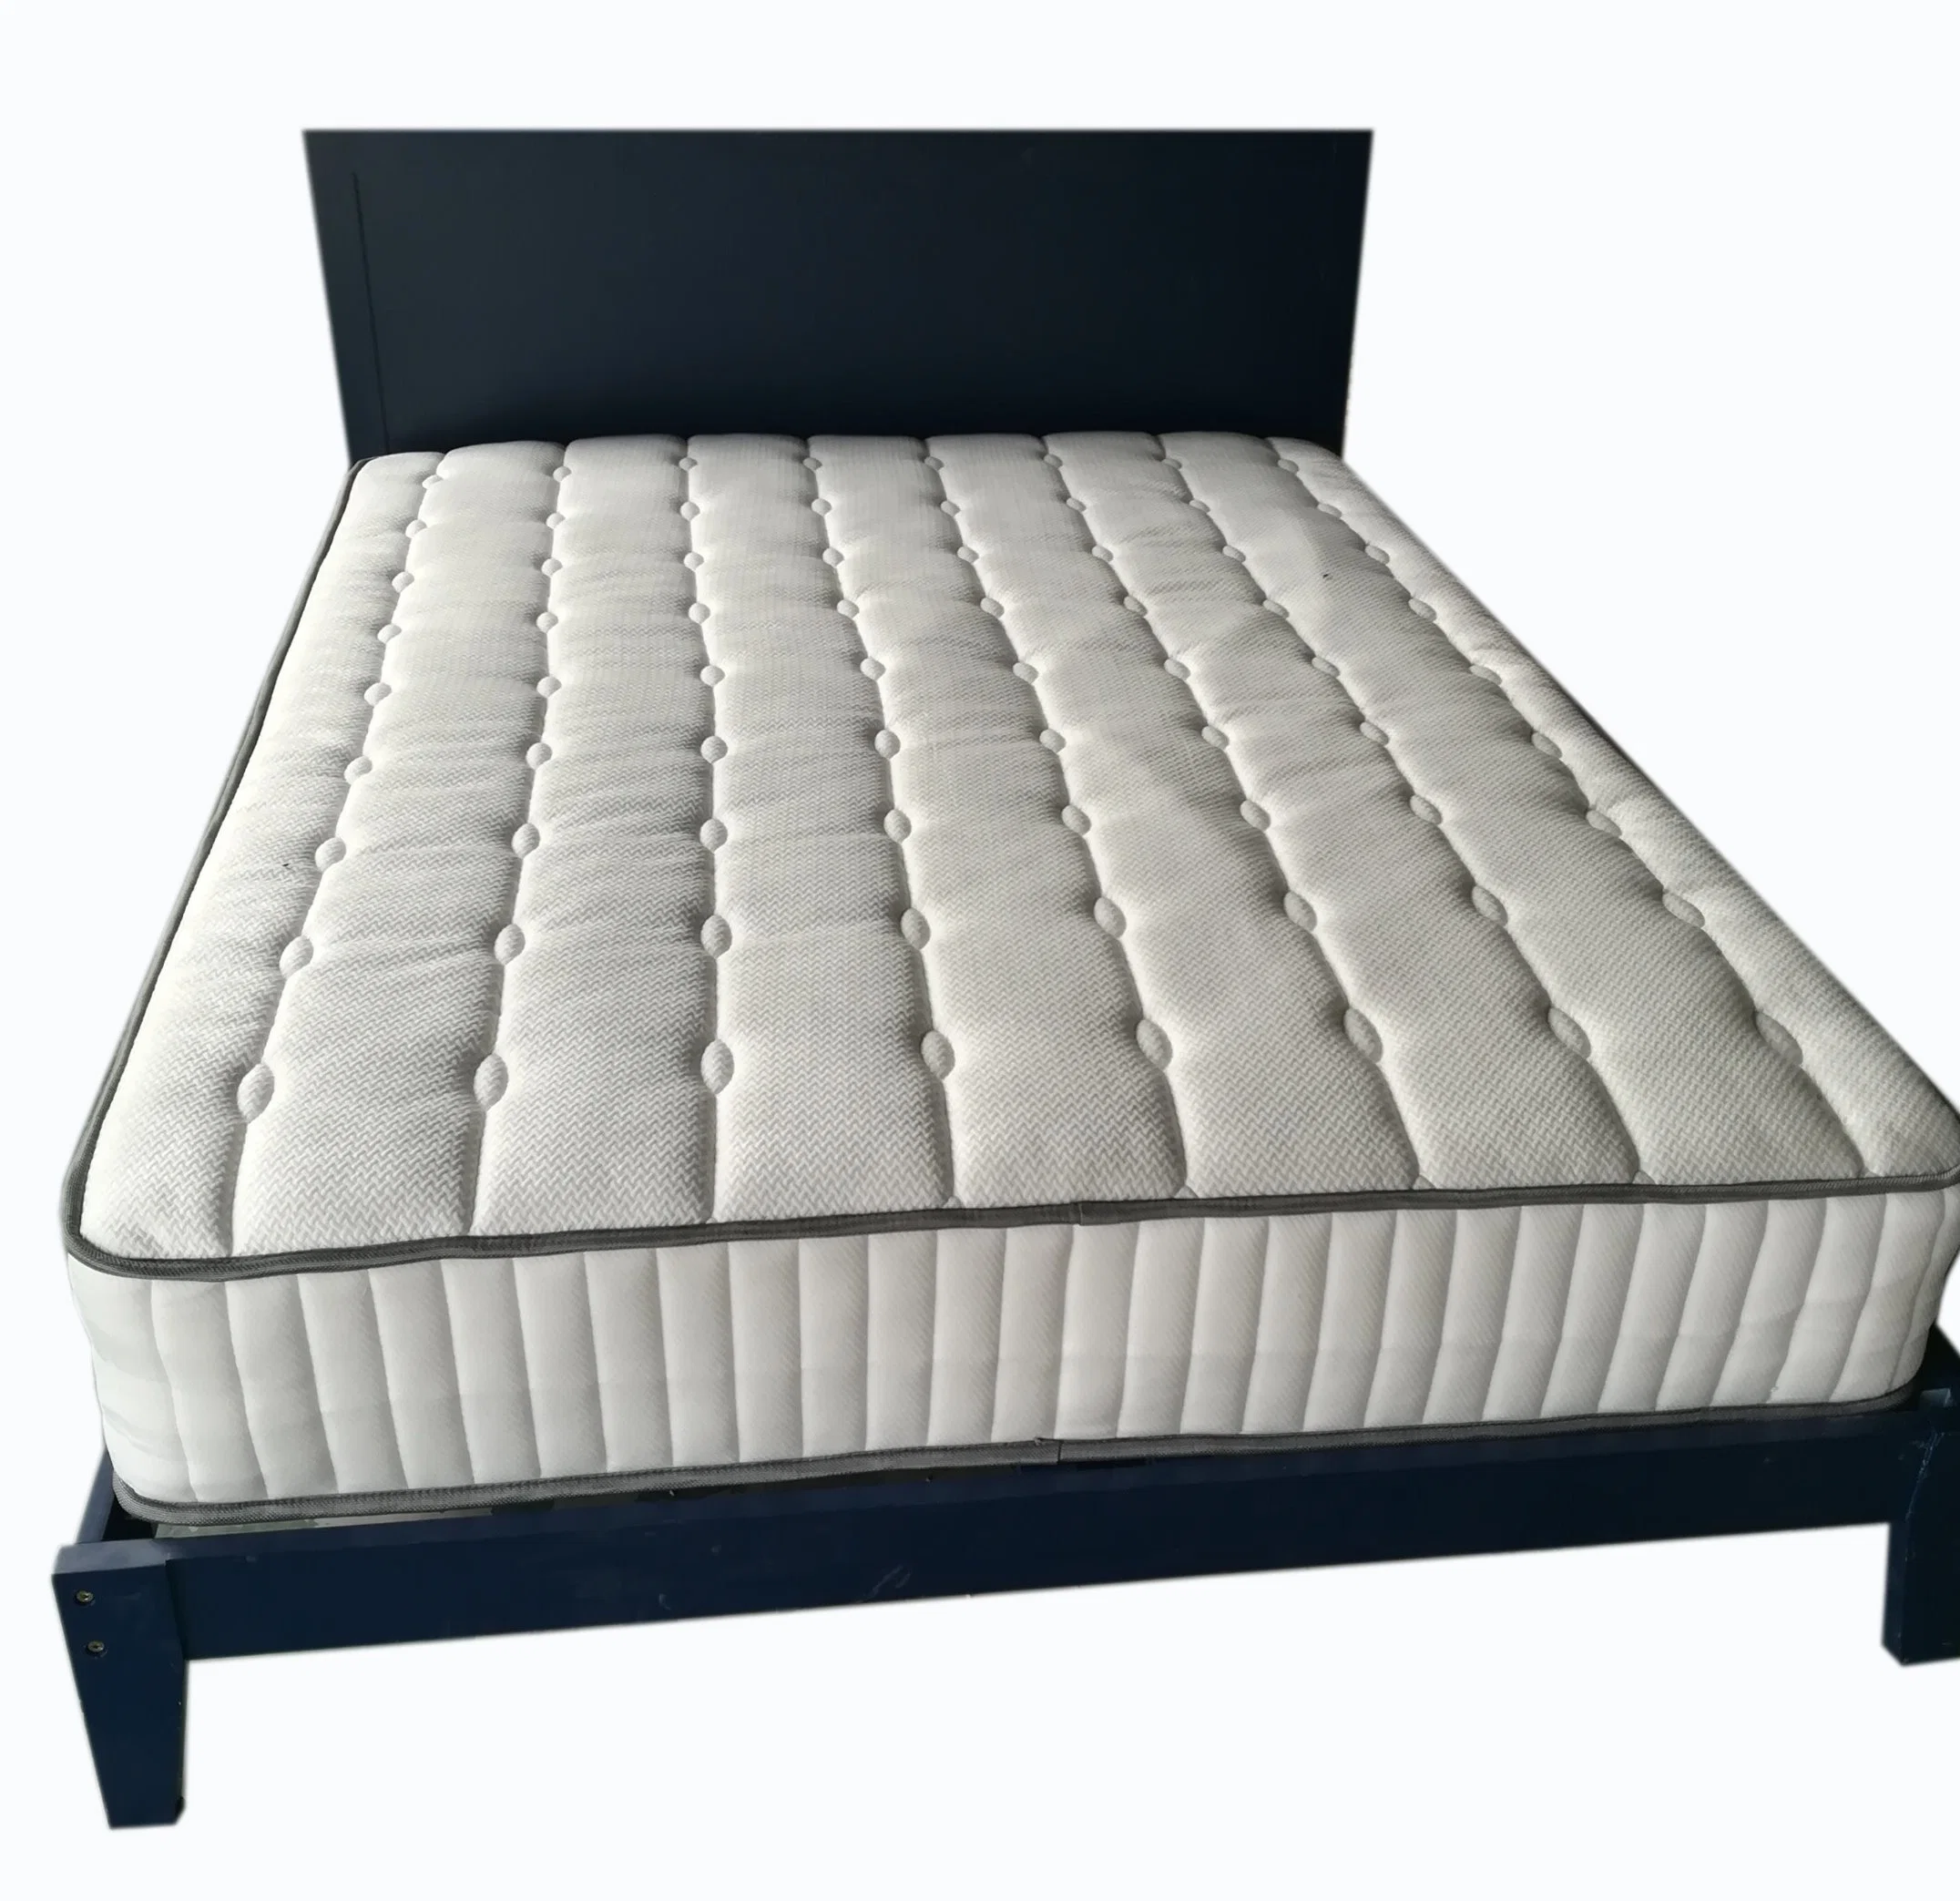 Modern Style Bedroom Furniture King Size Wooden Bed Platform Bed Turntable Bed